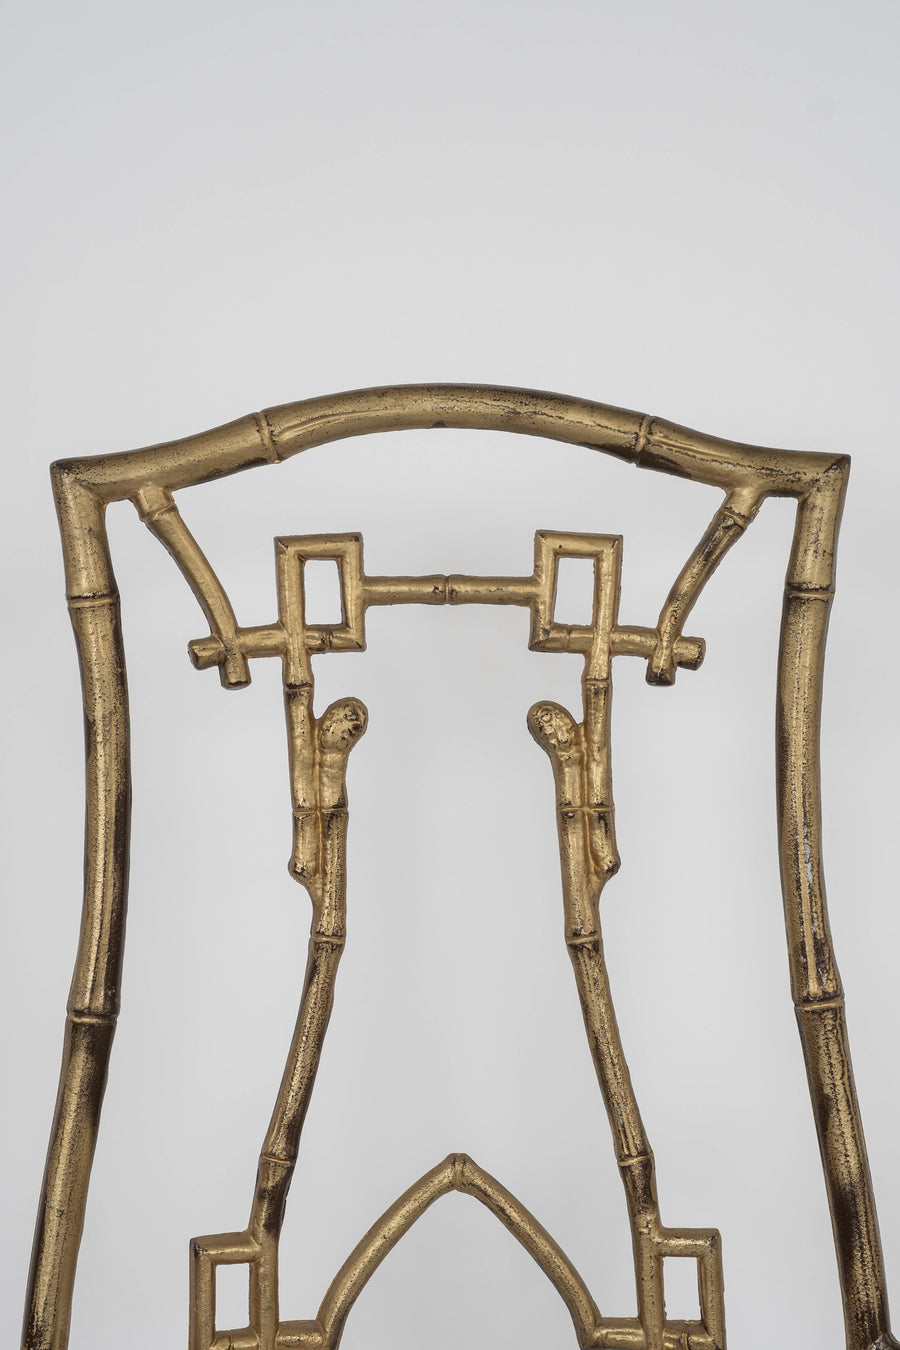 Aesthetic Bamboo Gilt Iron Arm Chair